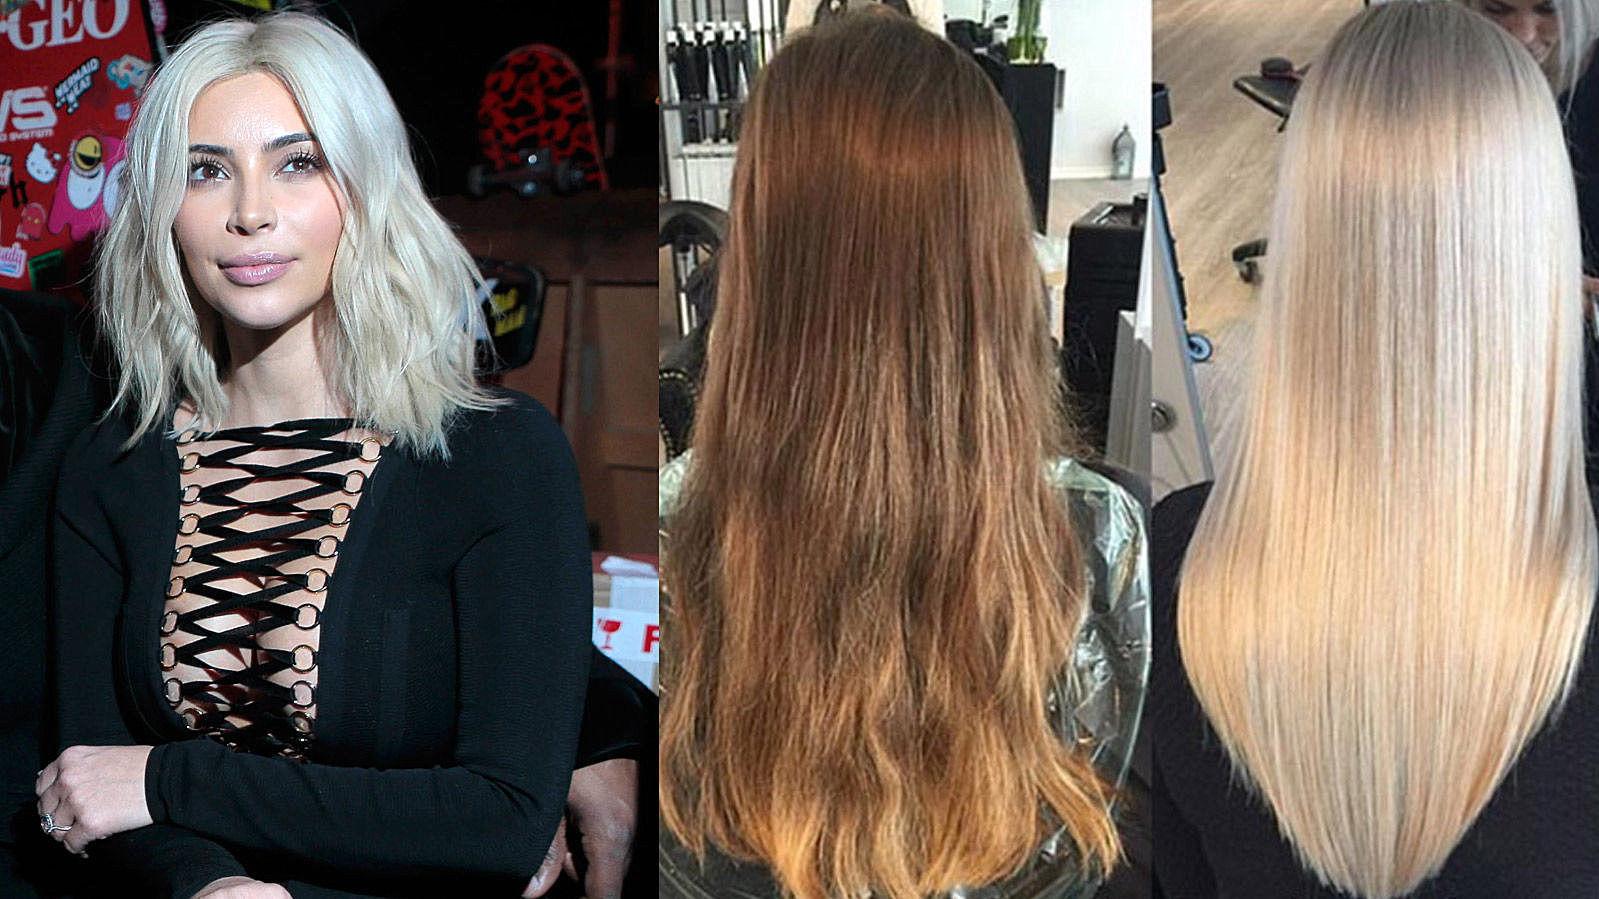 HÅRMAGI: Kim Kardashian er blant stjernen som sverger til hårproduktet Olaplex. Hun gir middelet æren for at hun kan gjøre drastiske fargevalg uten å ødelegge håret. (Bildet til høyre viser før og etter bruk av Olaplex i bleking.)